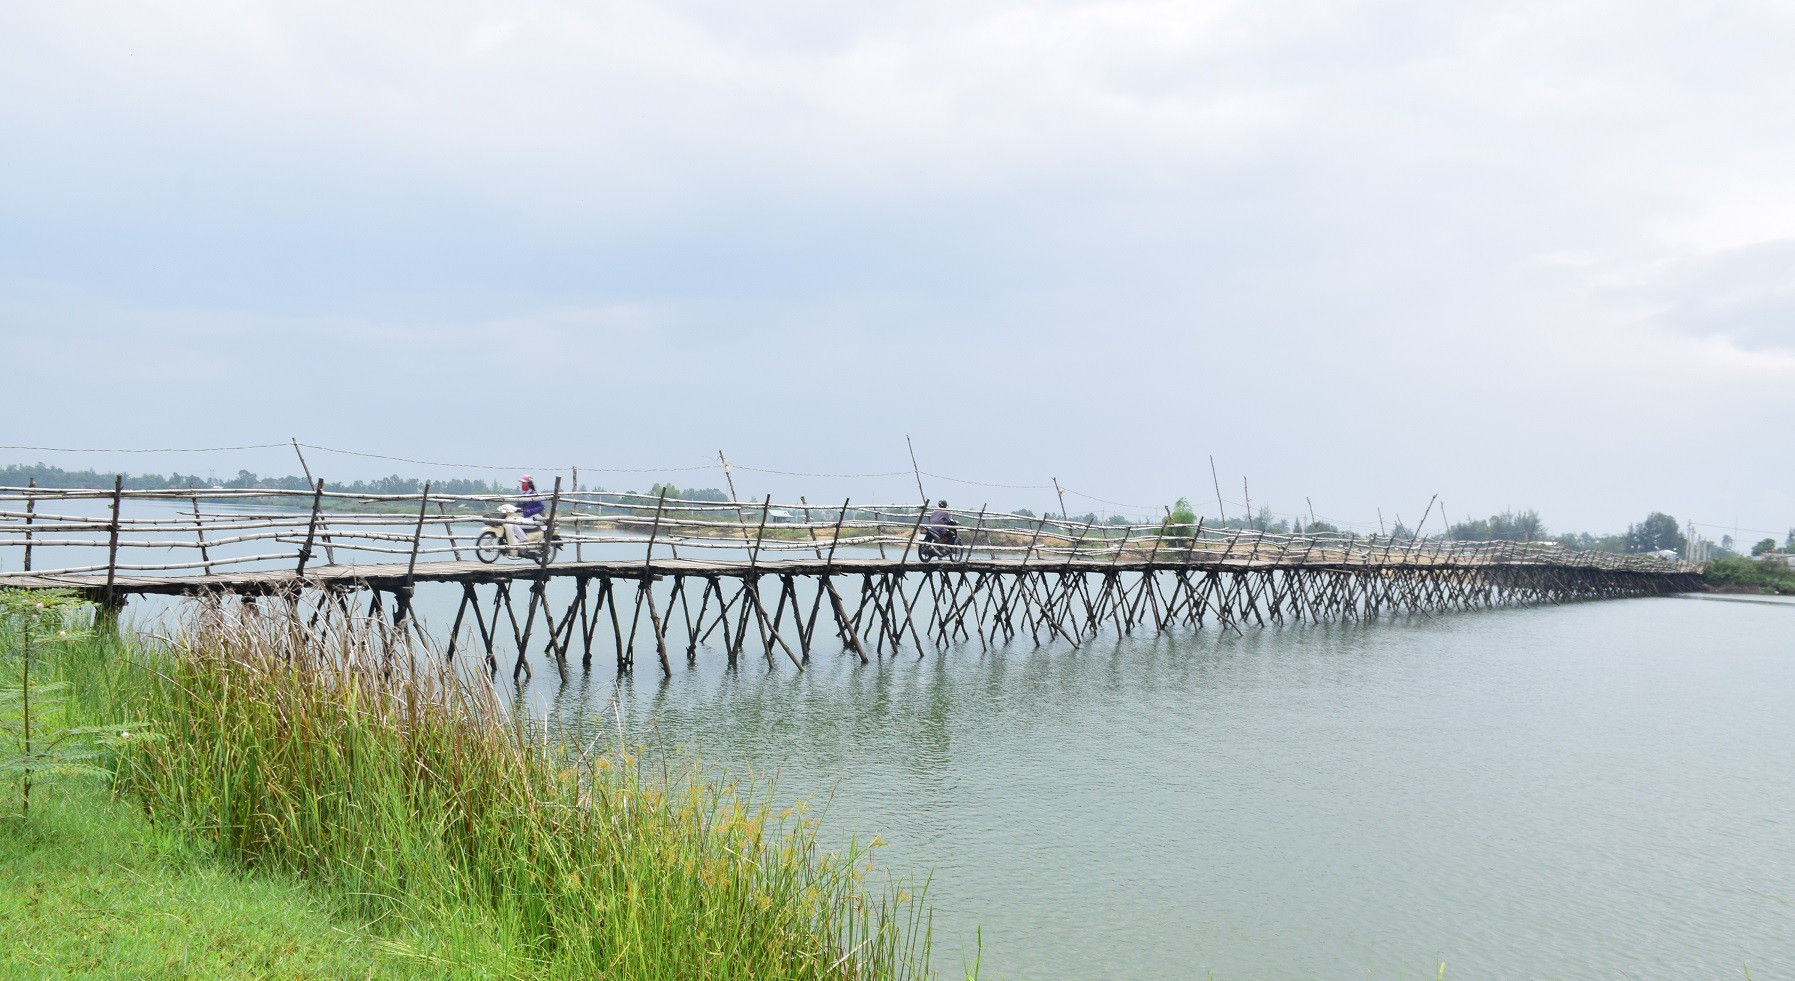 Cây cầu tạm bằng gỗ được được xây dựng gần nửa tỷ đồng với chiều rộng 2.5m, dài 200 m) phục vụ việc đi lại tạm thời của 13.000 người dân địa phương. Cây cầu này chỉ sử dụng được mùa nắng, vào mùa mưa nước sông dân cao cầu sẽ bi cuốn trôi.Ảnh: THANH THẮNG